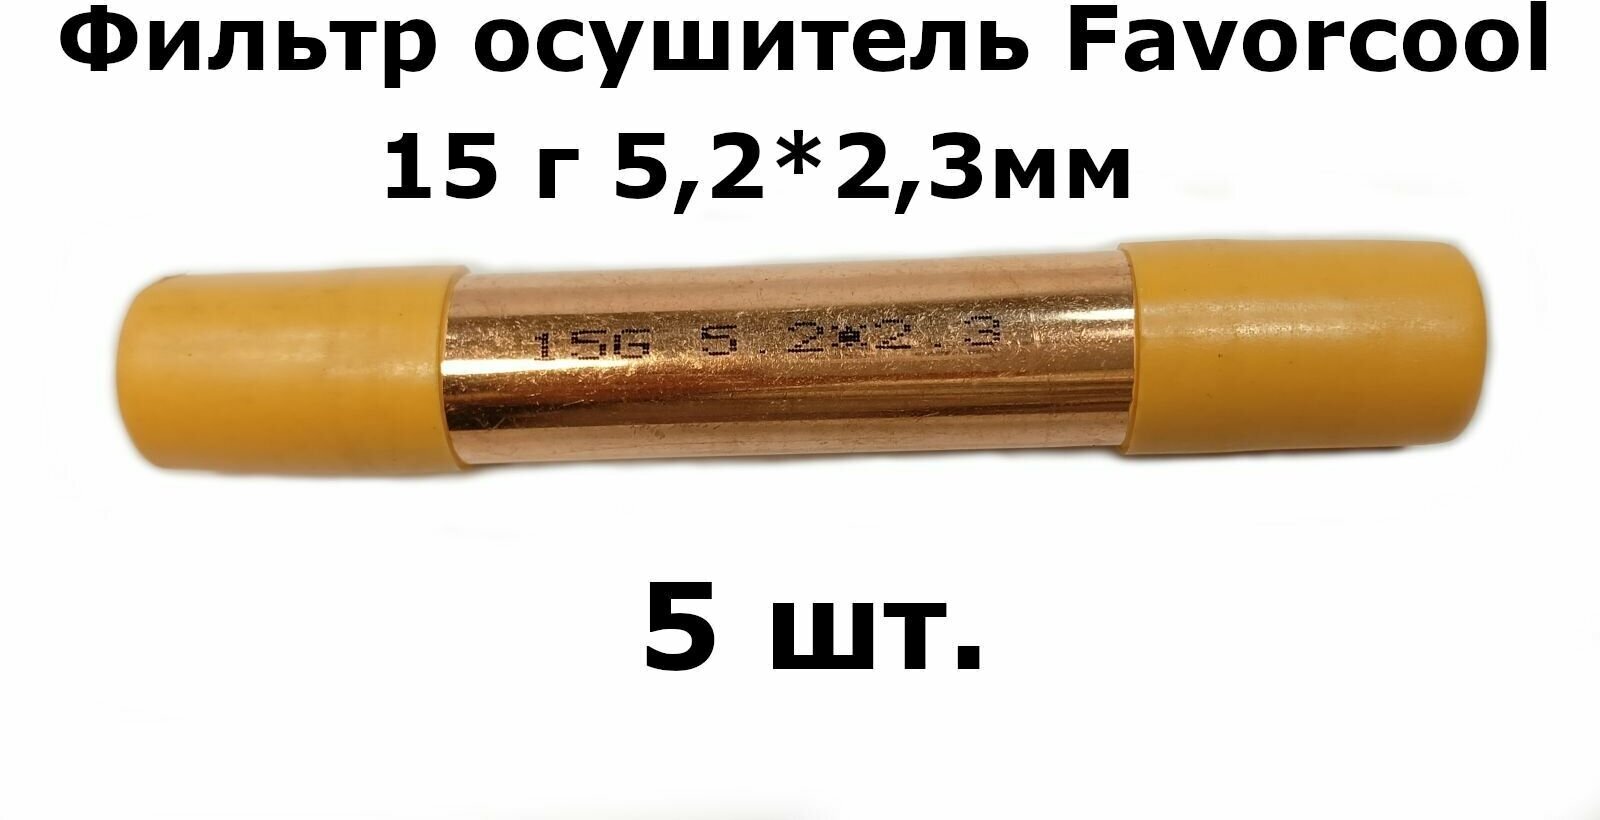 Фильтр осушитель Favorcool 15 гр 5,2*2,3мм (19*0,4*120) - 5 шт.